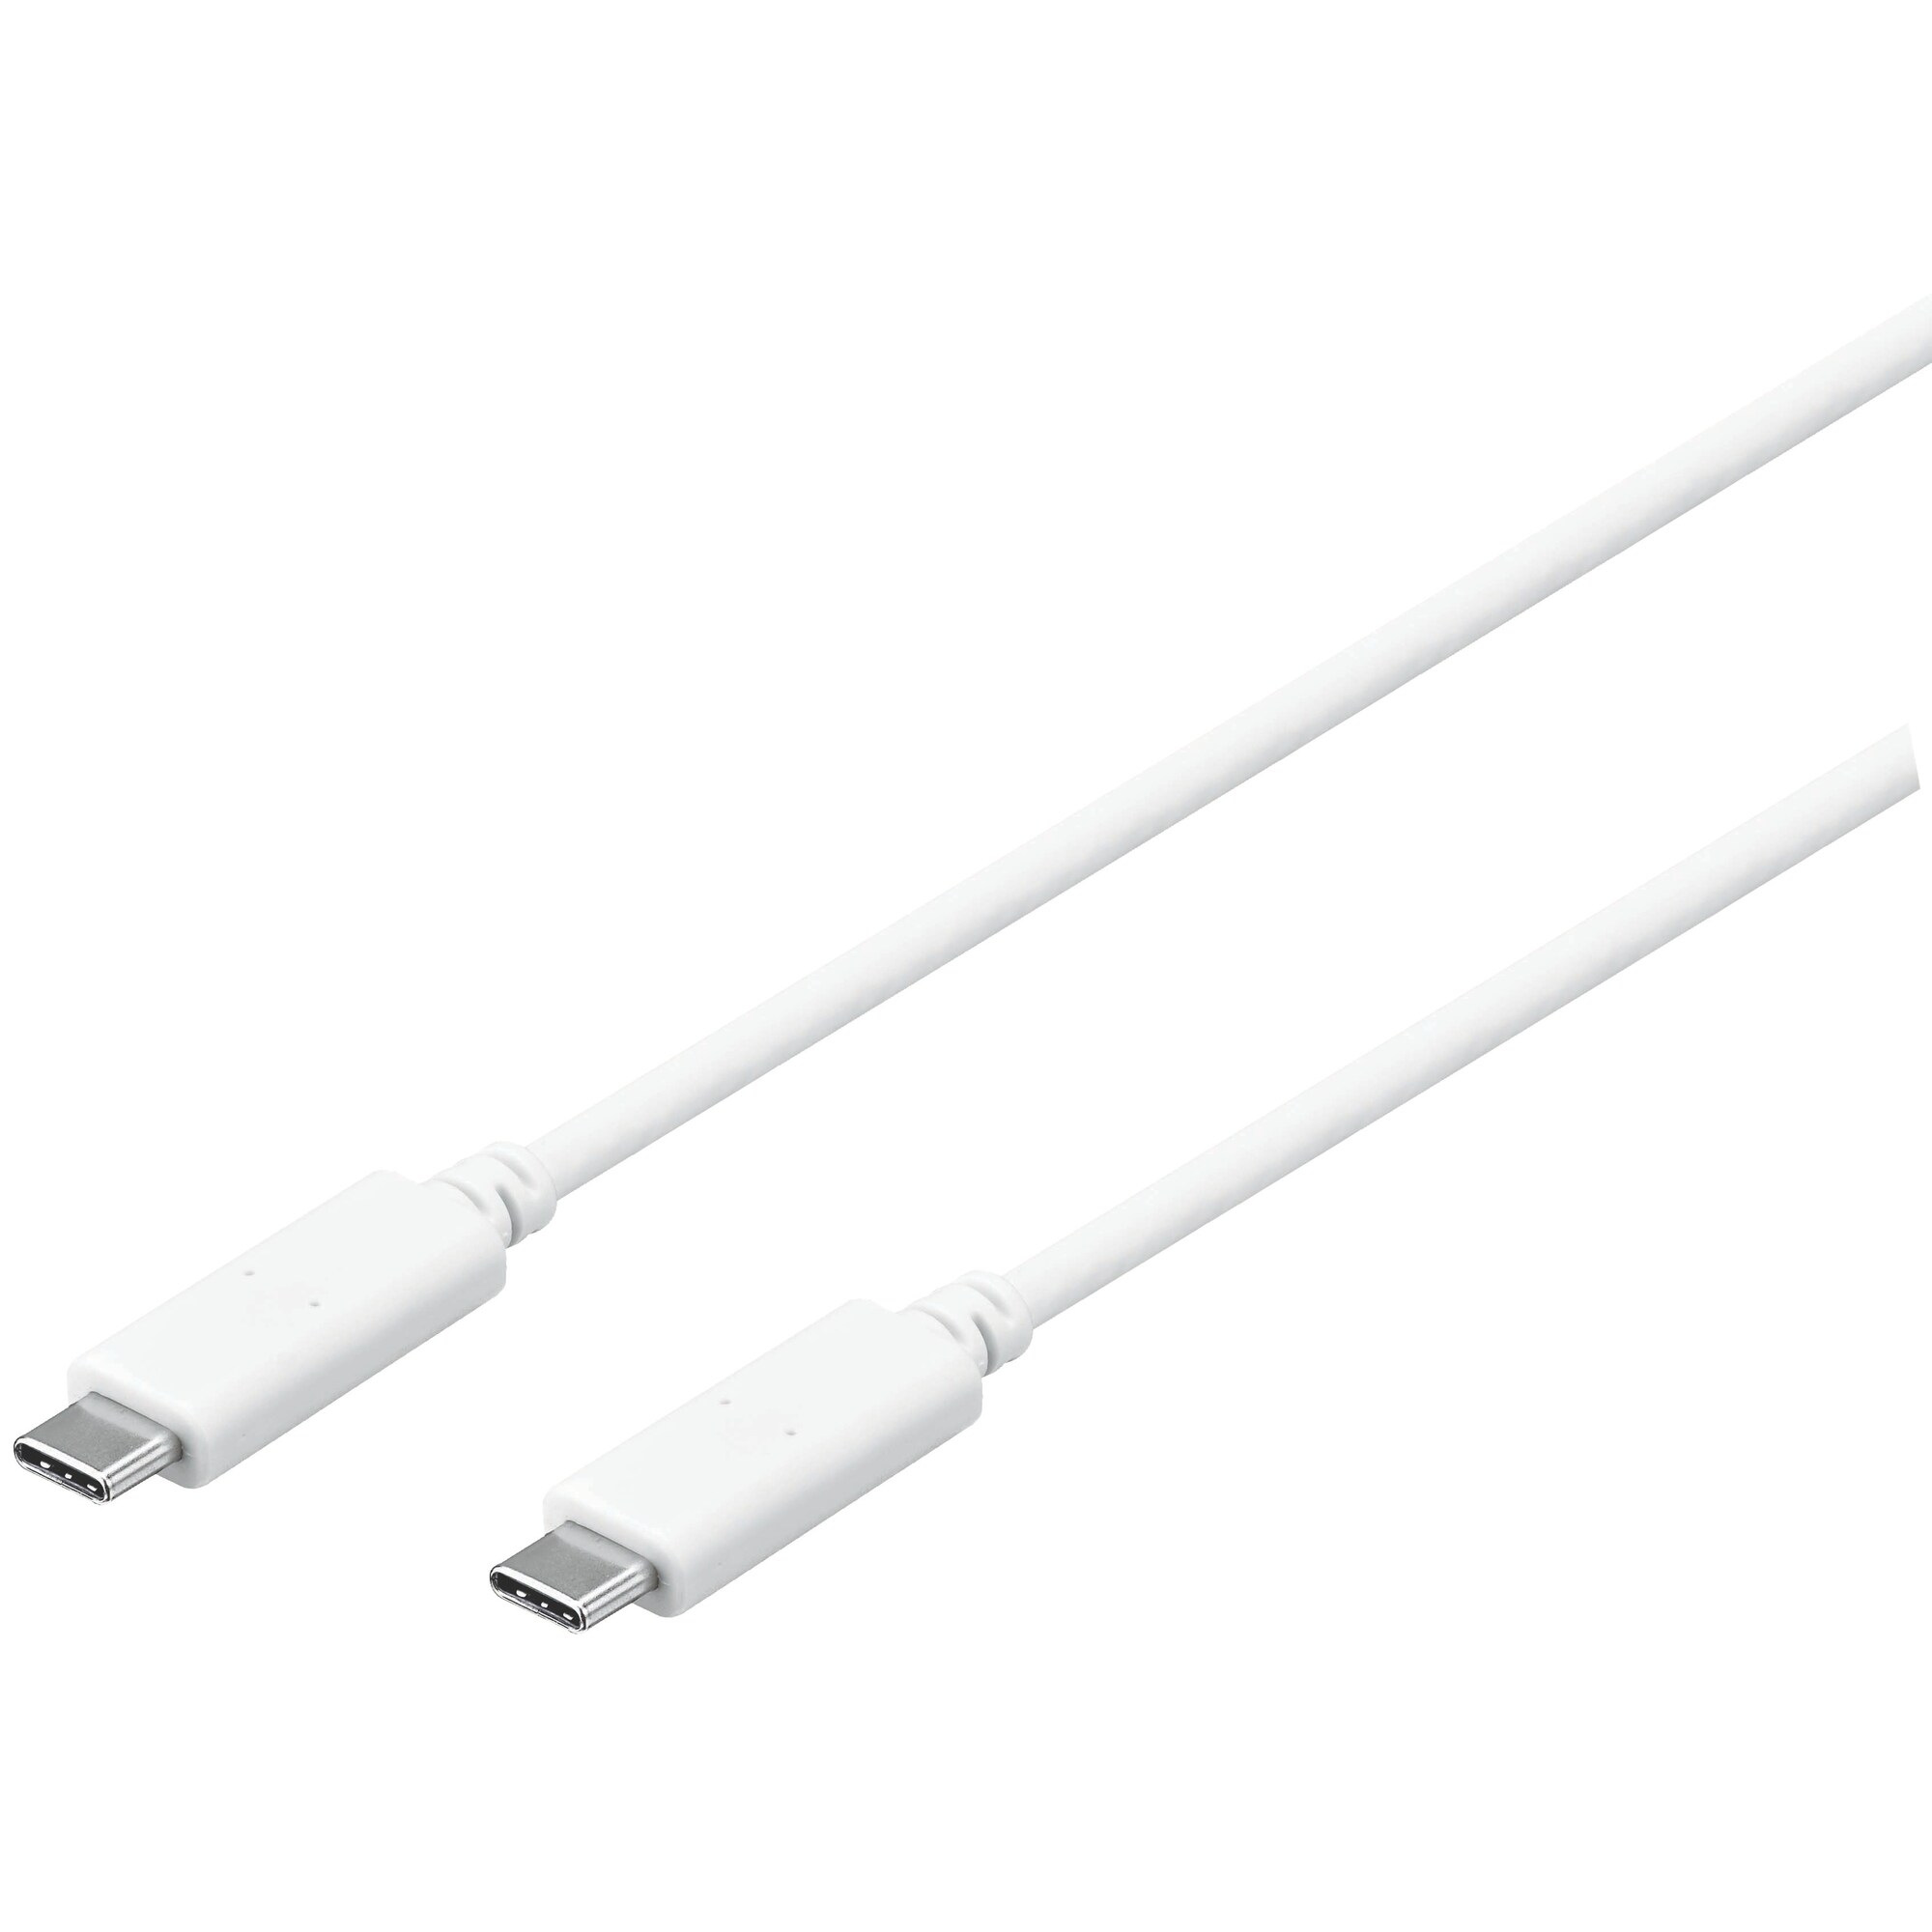 Sandstrøm USB-C - USB-C kaapeli 1,2 m (valkoinen) - Gigantti verkkokauppa